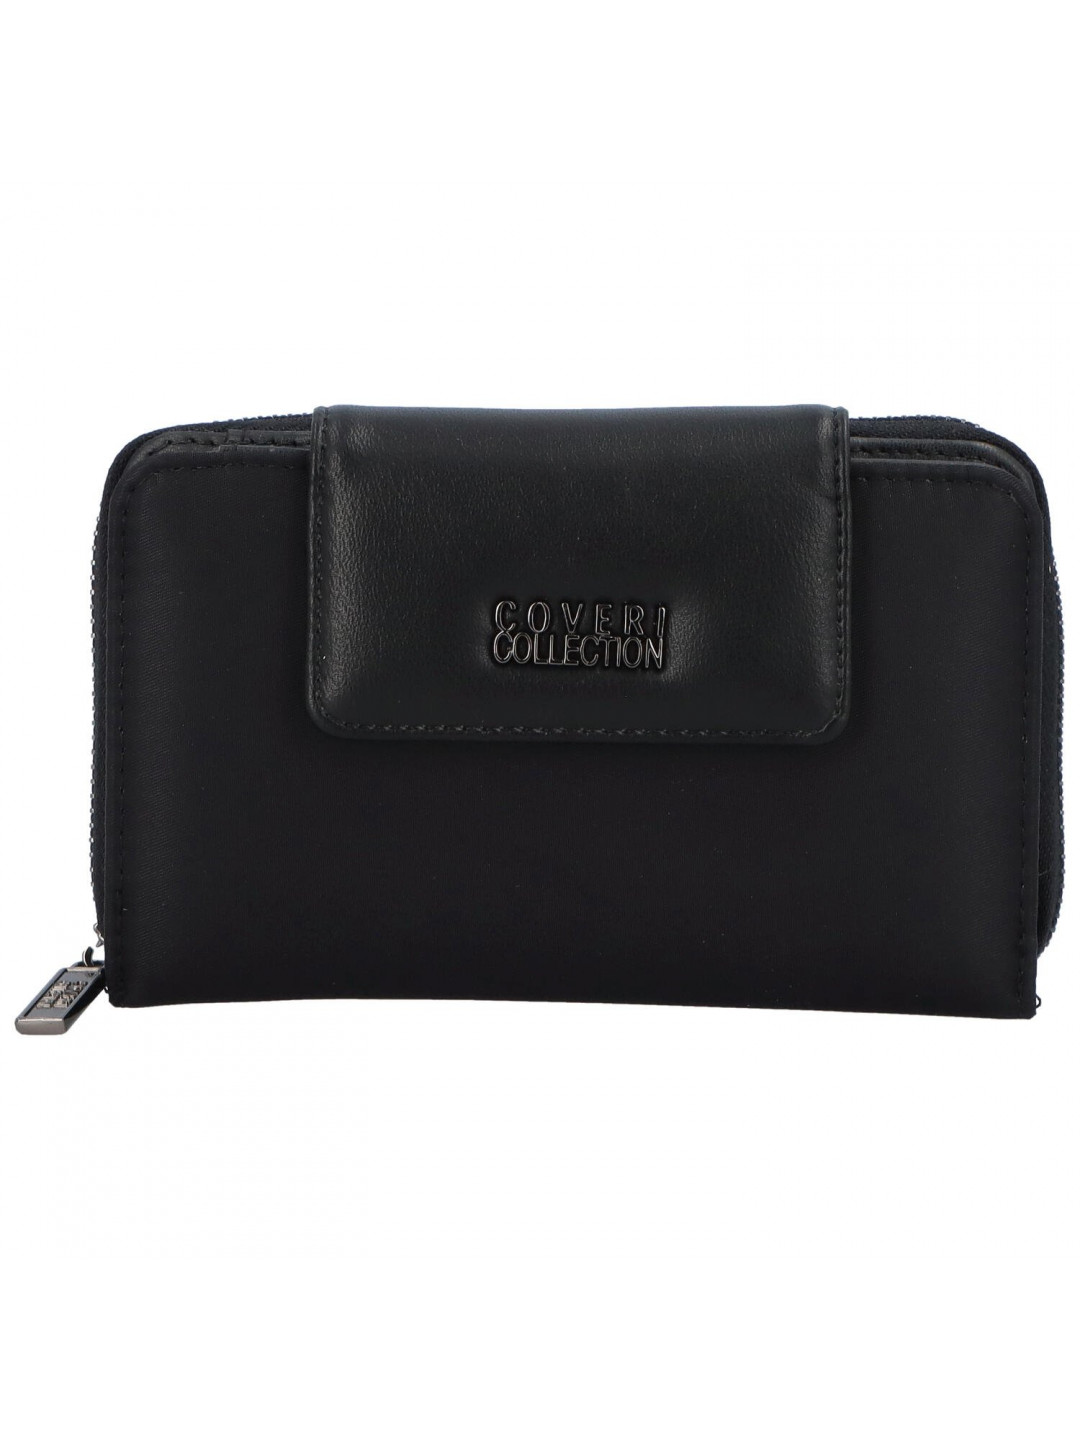 Dámská peněženka černá – Coveri CW224